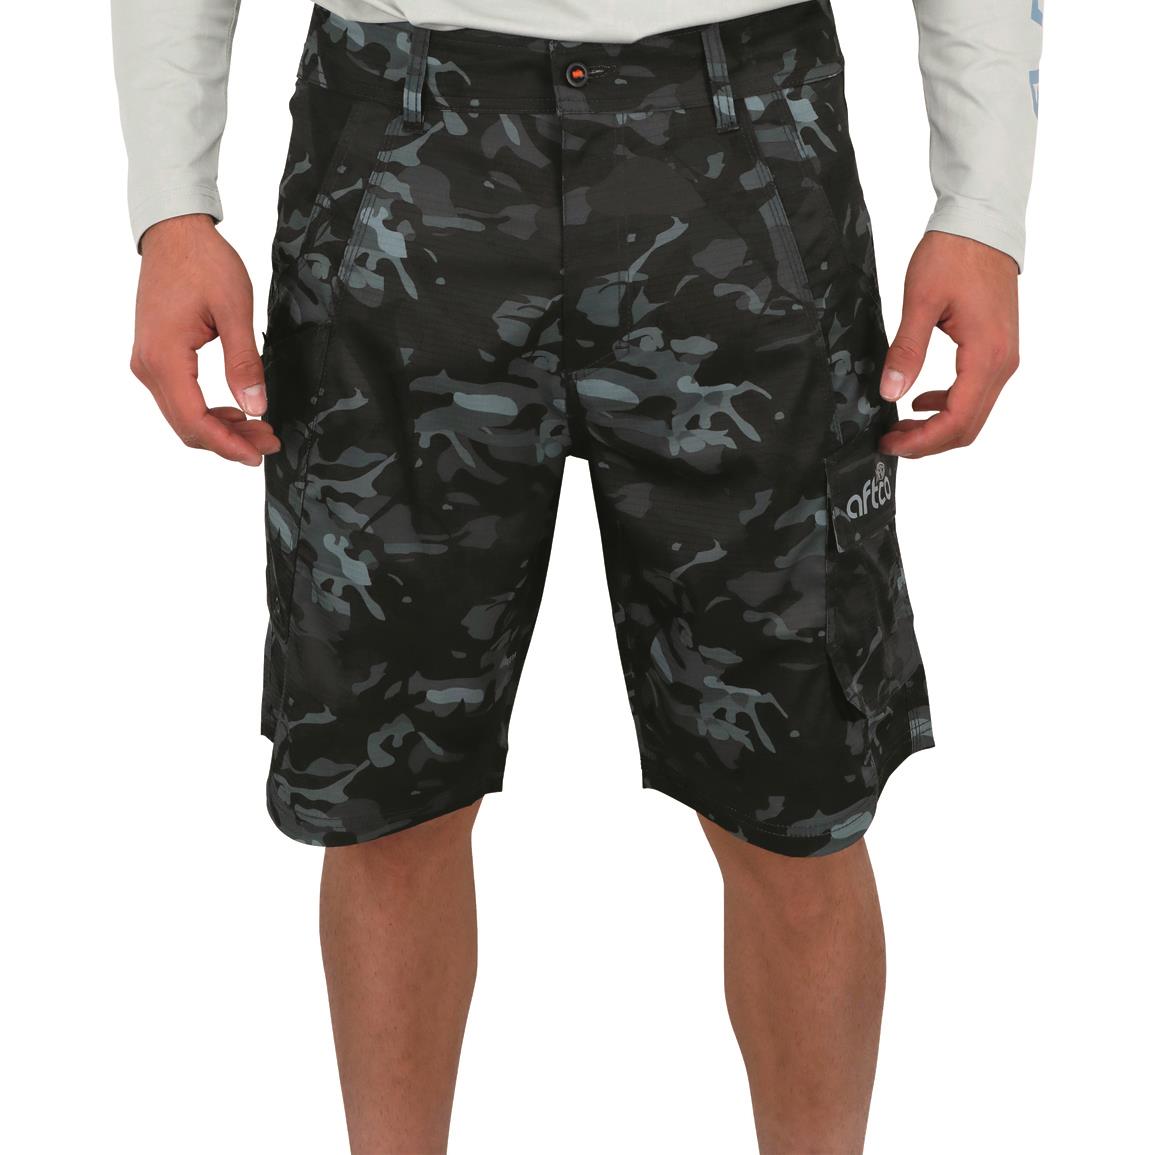 AFTCO Men's Tactical Fishing Shorts, Black Camo